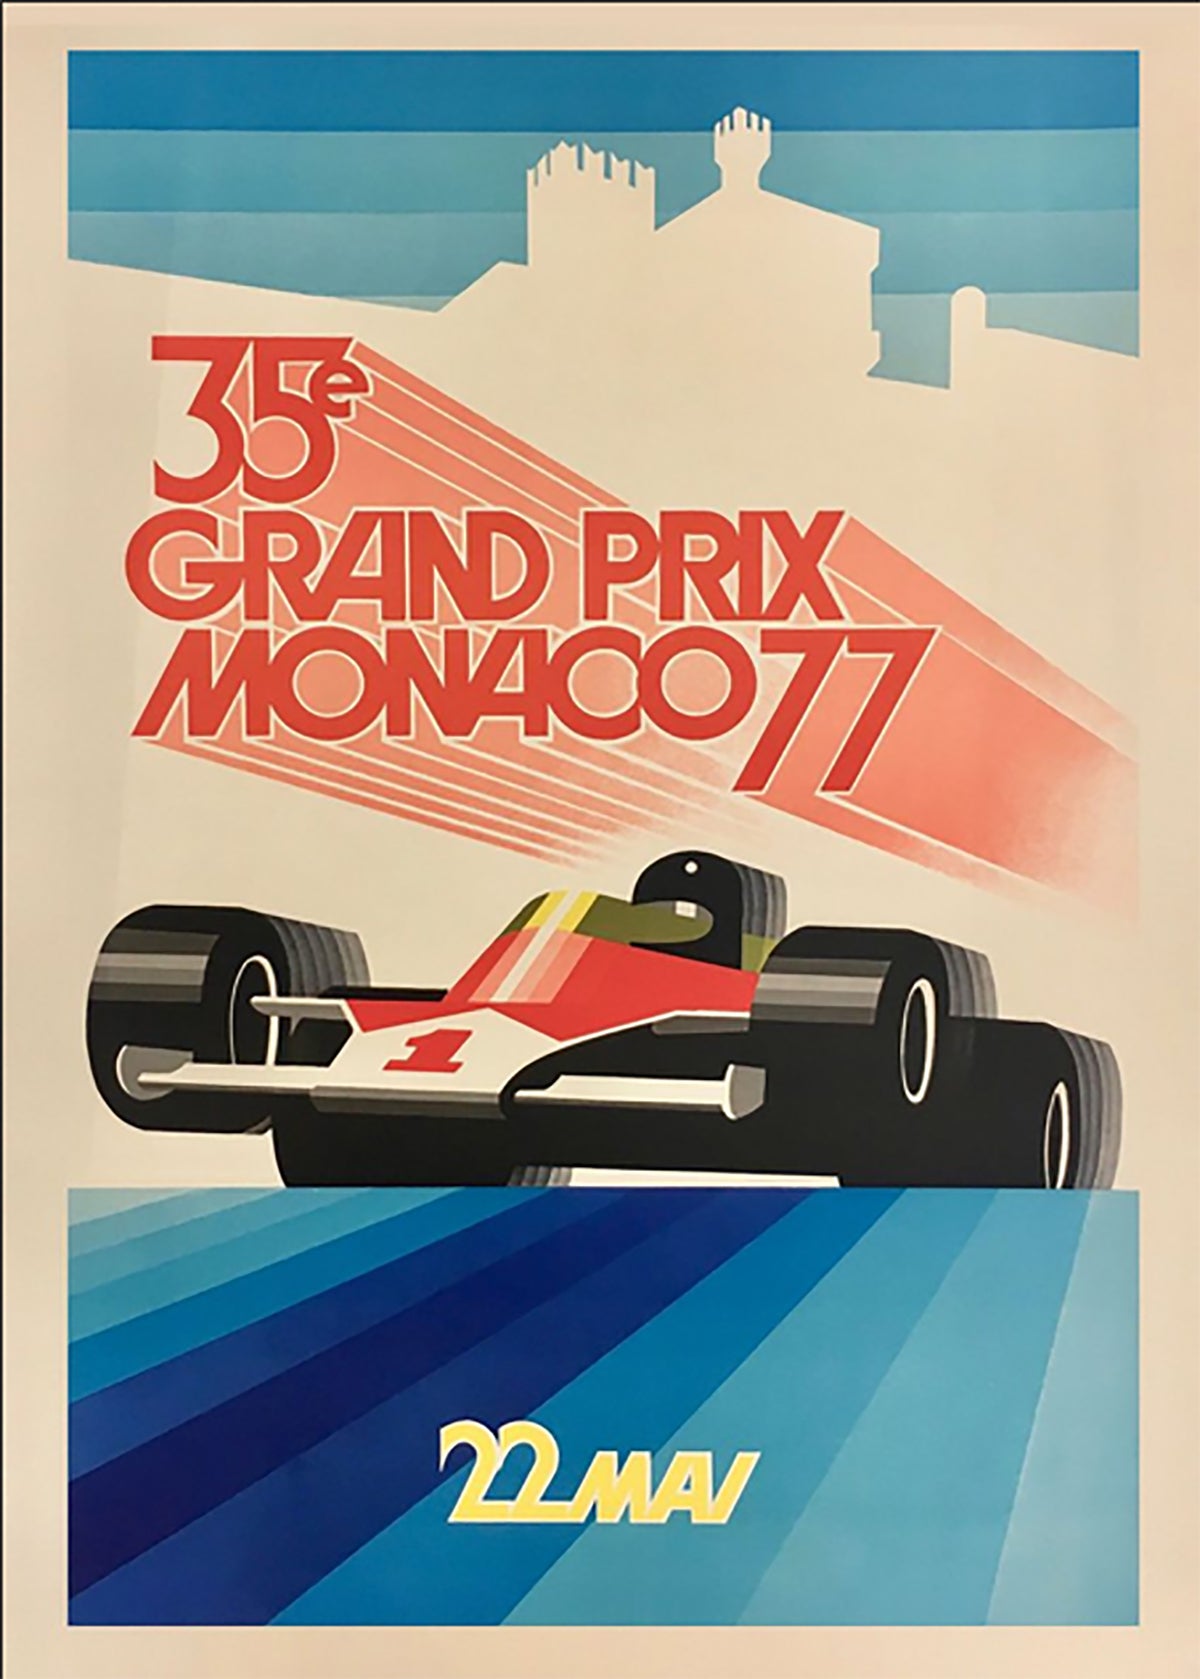 TPFLiving Poster Leinwand / Berühmte Rennen - Vintage - Großer Preis von Europa - Monza 11.09.1950 / Verschiedene Größen - OHNE Rahmen - Modell 9